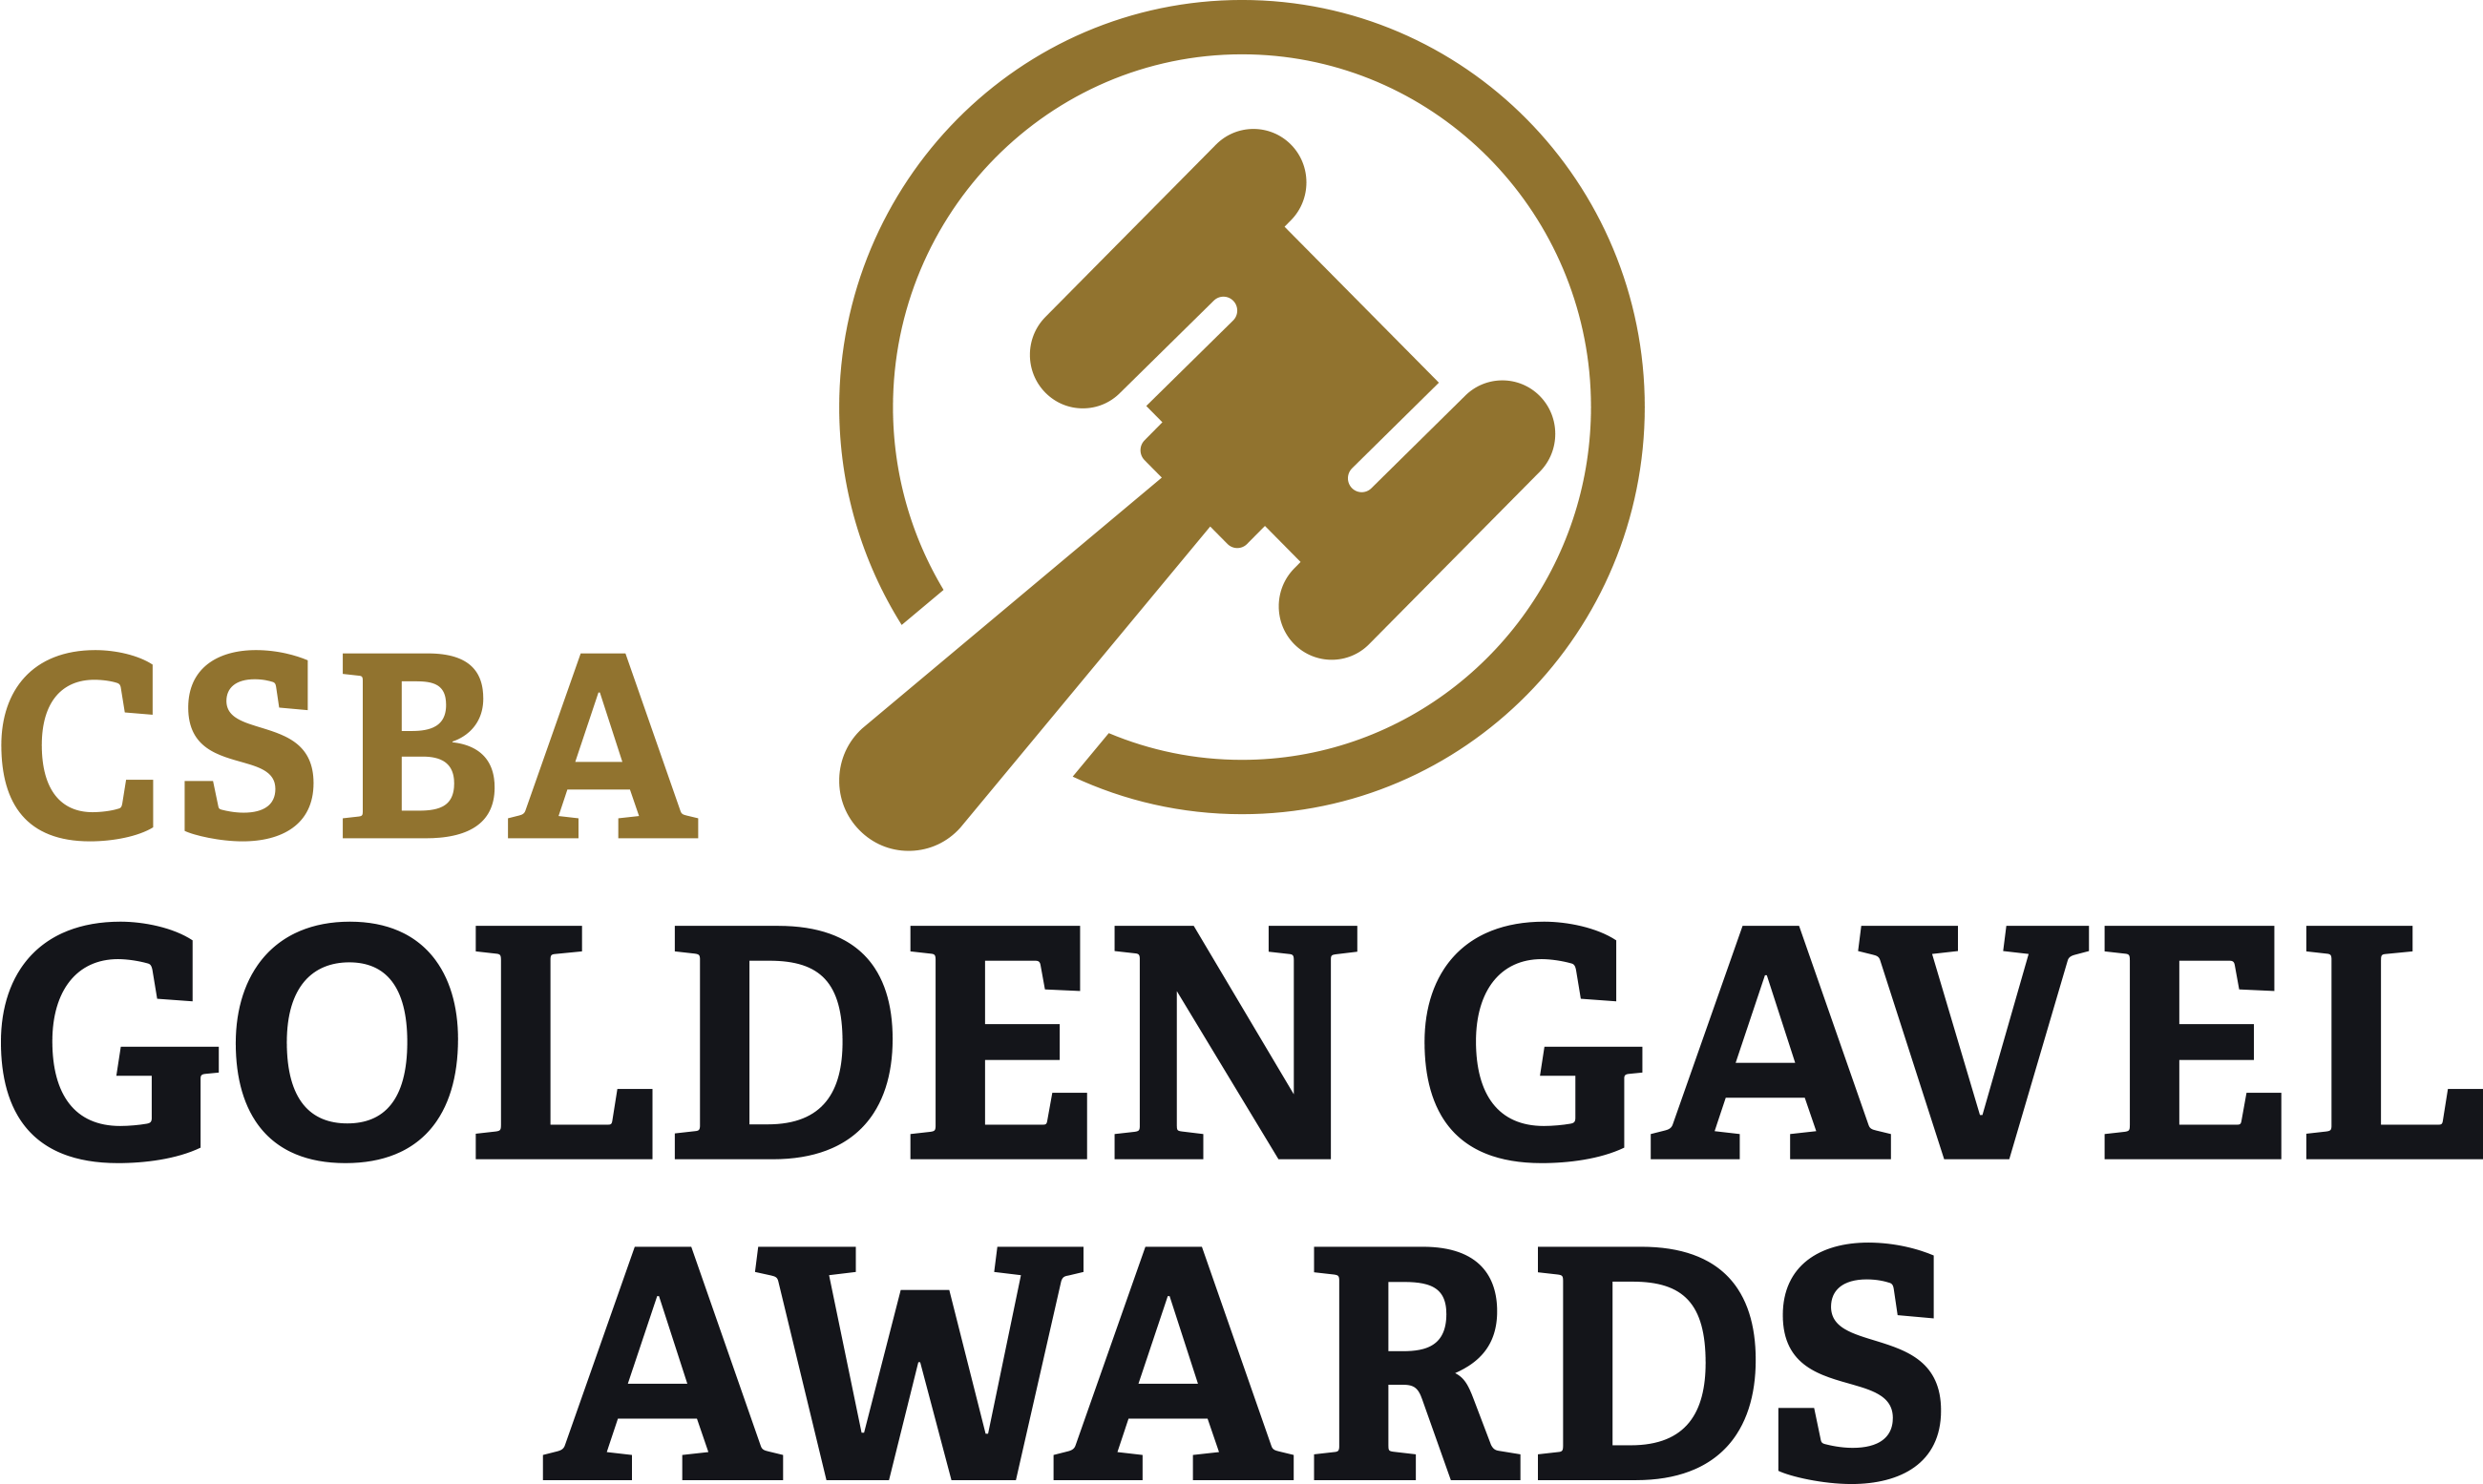 CSBA Golden Gavel Awards logo